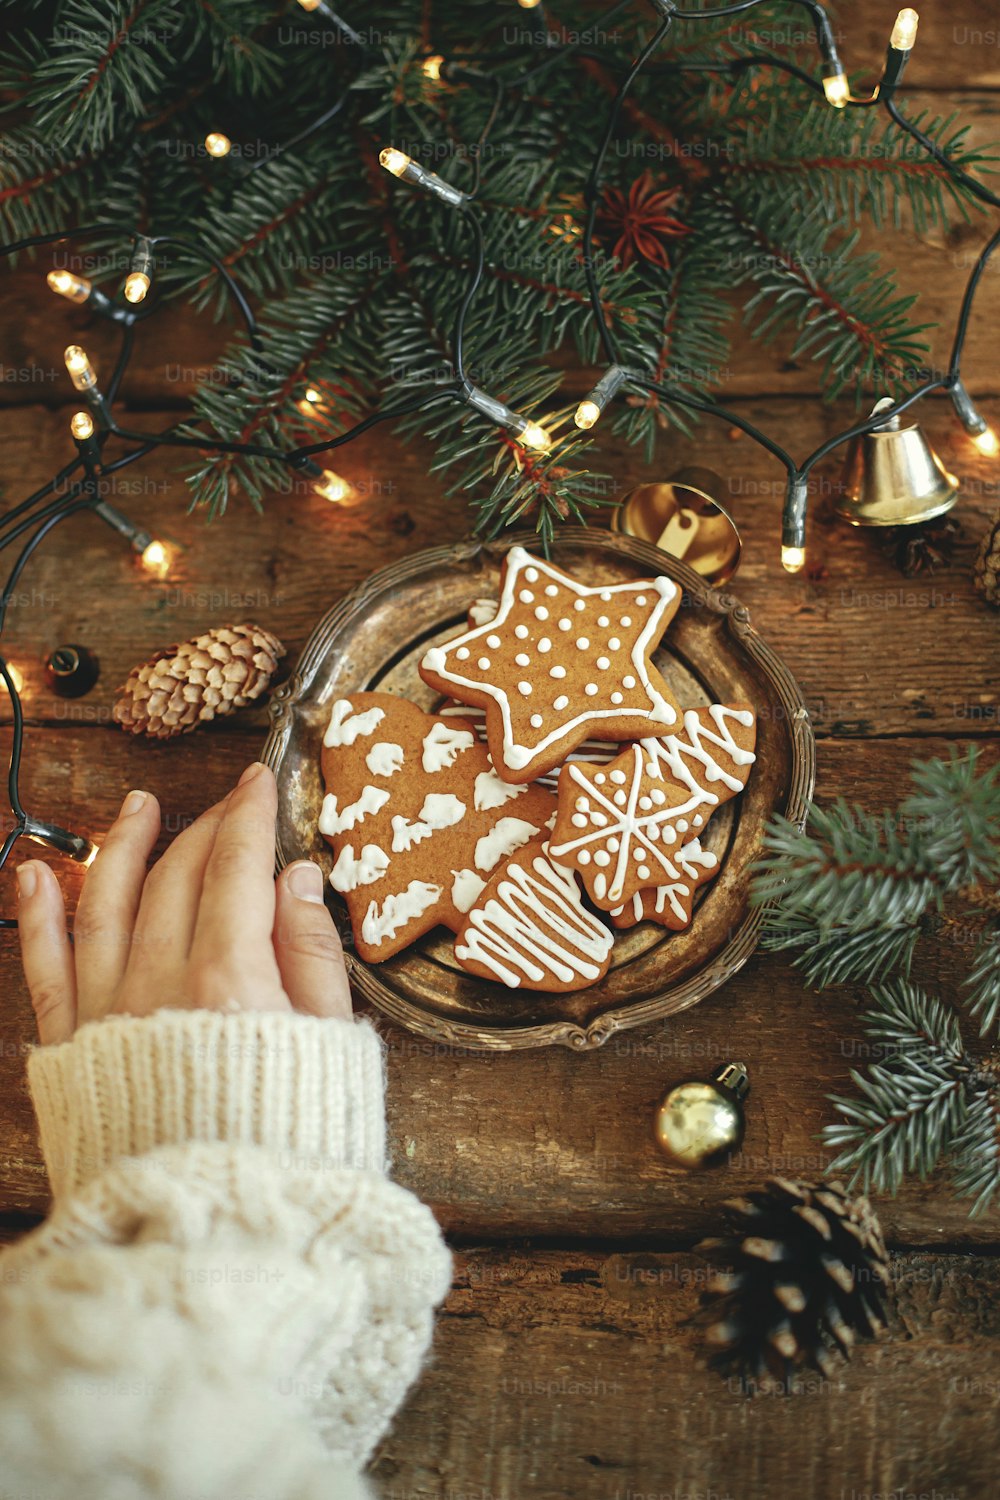 Piatto a mano con biscotti di pan di zenzero di Natale, rami di abete, luci calde su tavolo di legno rustico, flat lay. Immagine invernale atmosferica. Buone feste. Deliziosi biscotti fatti in casa